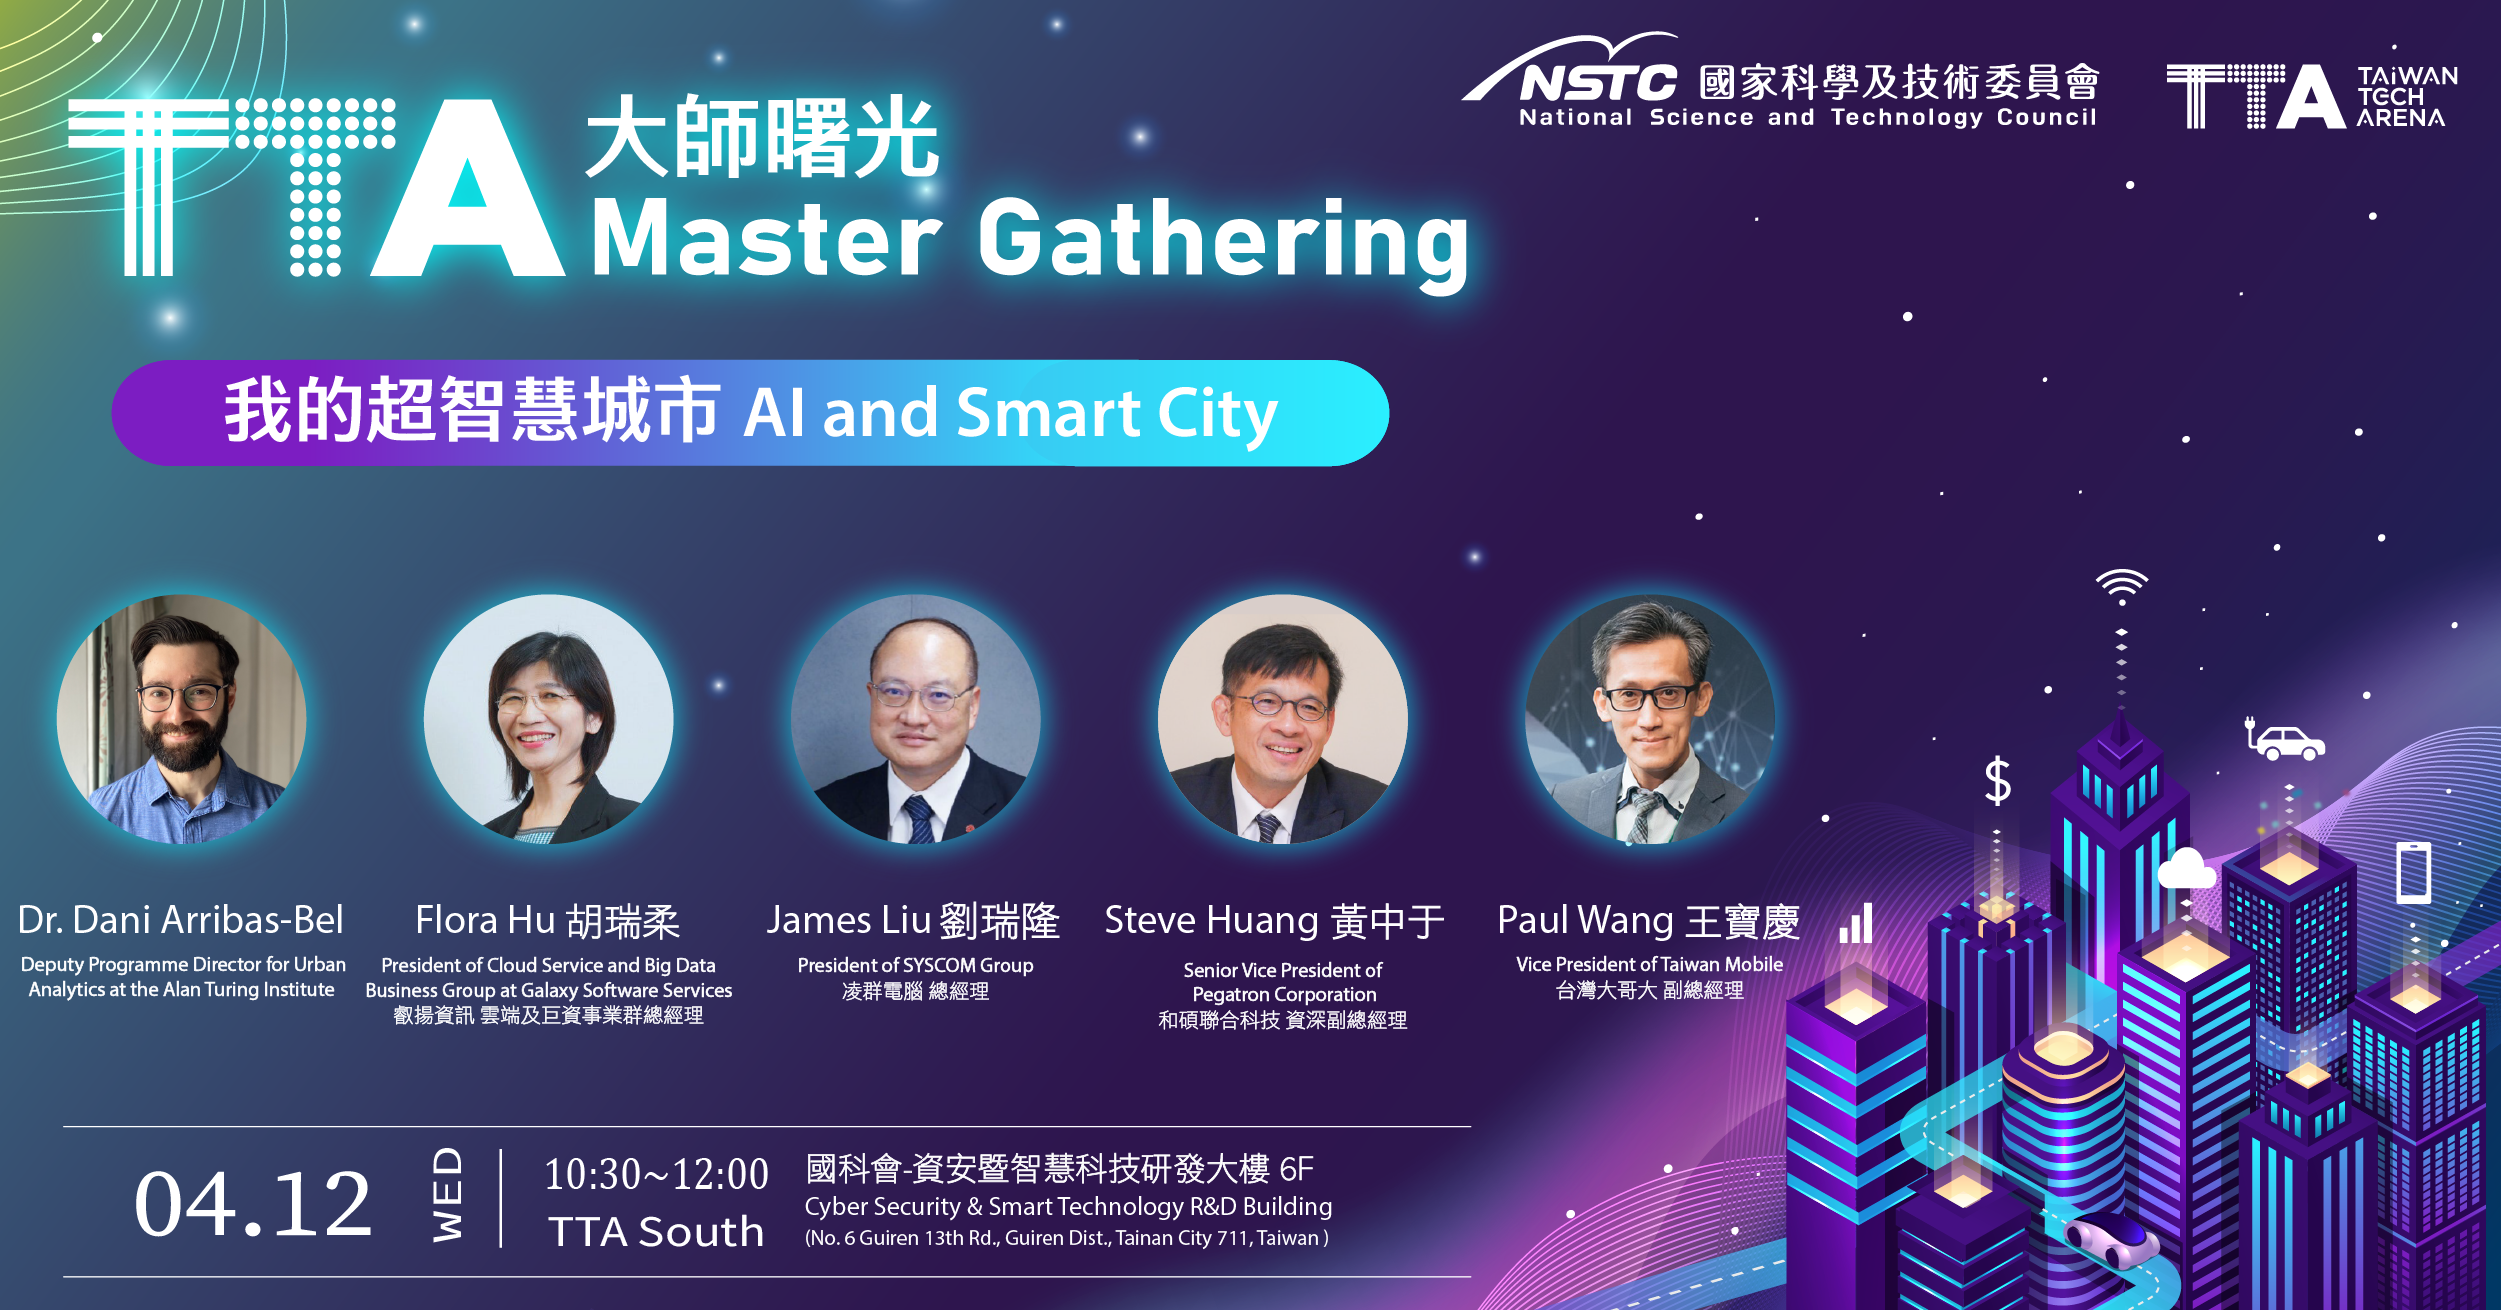 [活動]4/12 大師曙光:我的超智慧城市   Masters Gathering- AI & Smart City